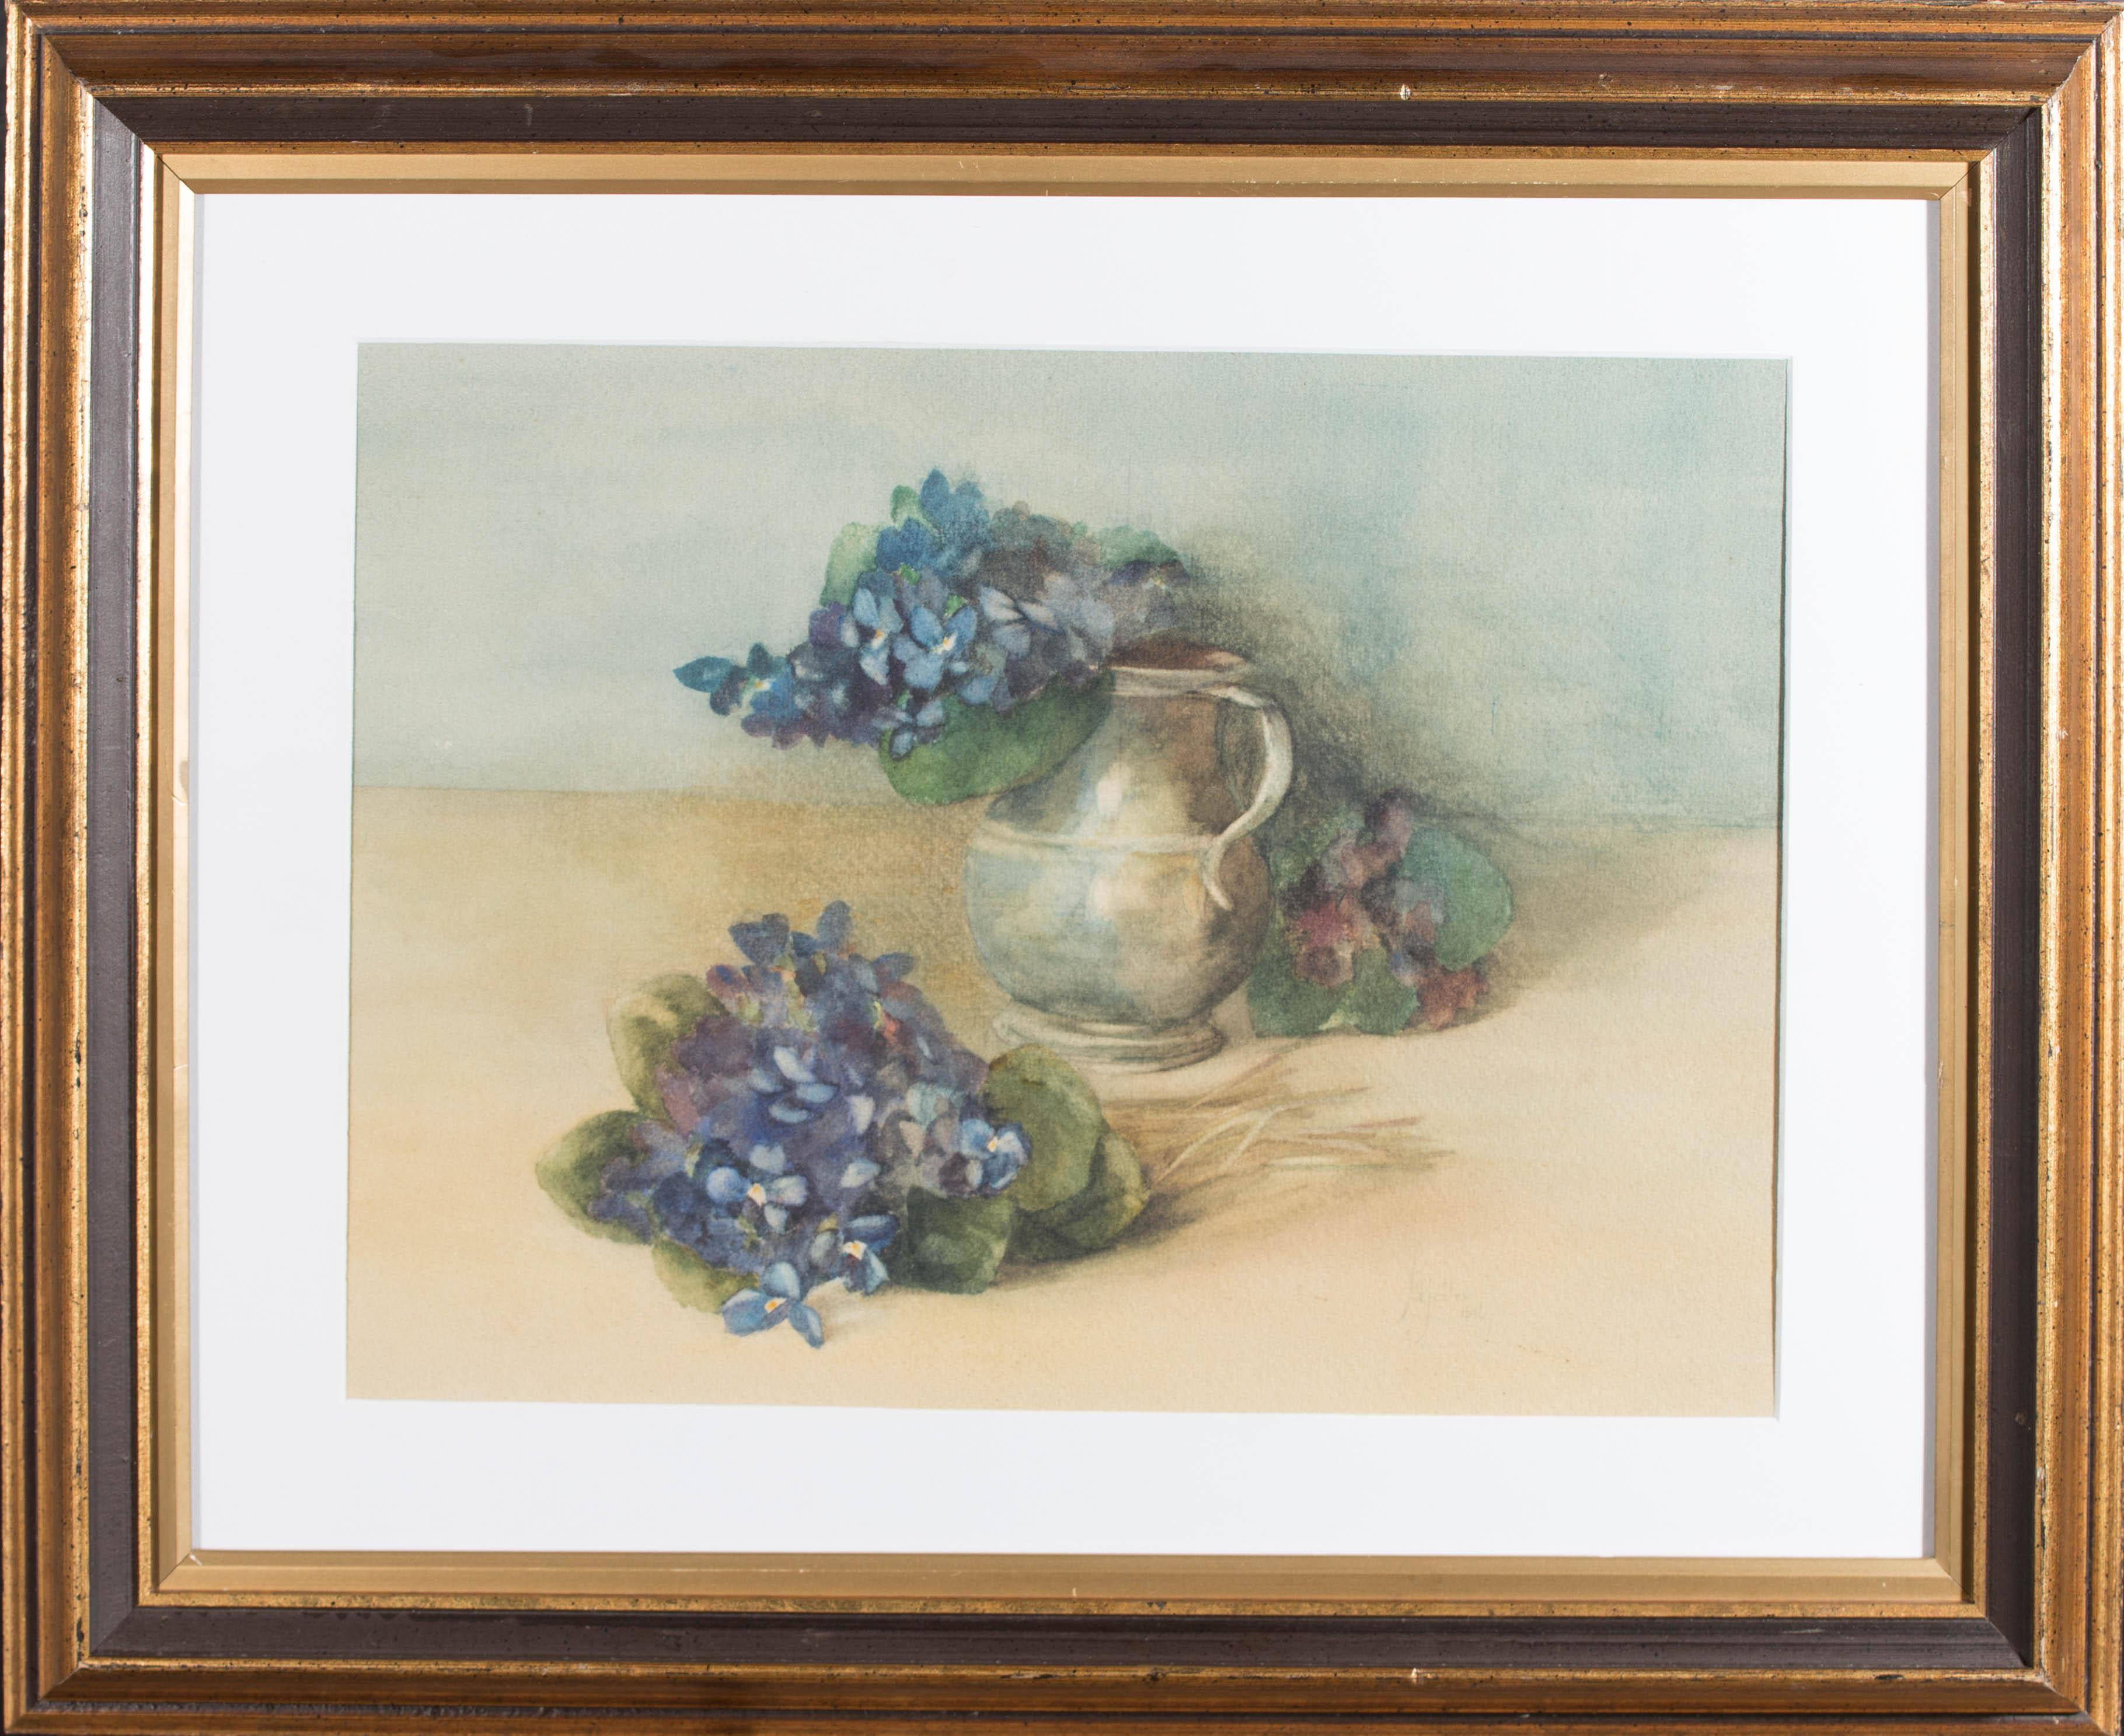 Ein schönes und gelungenes Aquarell des britischen Künstlers James Valentine Jelley. Das Bild zeigt Hortensienblüten in einer Zinnkanne, wobei die Farbgebung, die zarten Pinselstriche und die Gesamtstruktur der Komposition die Beherrschung des